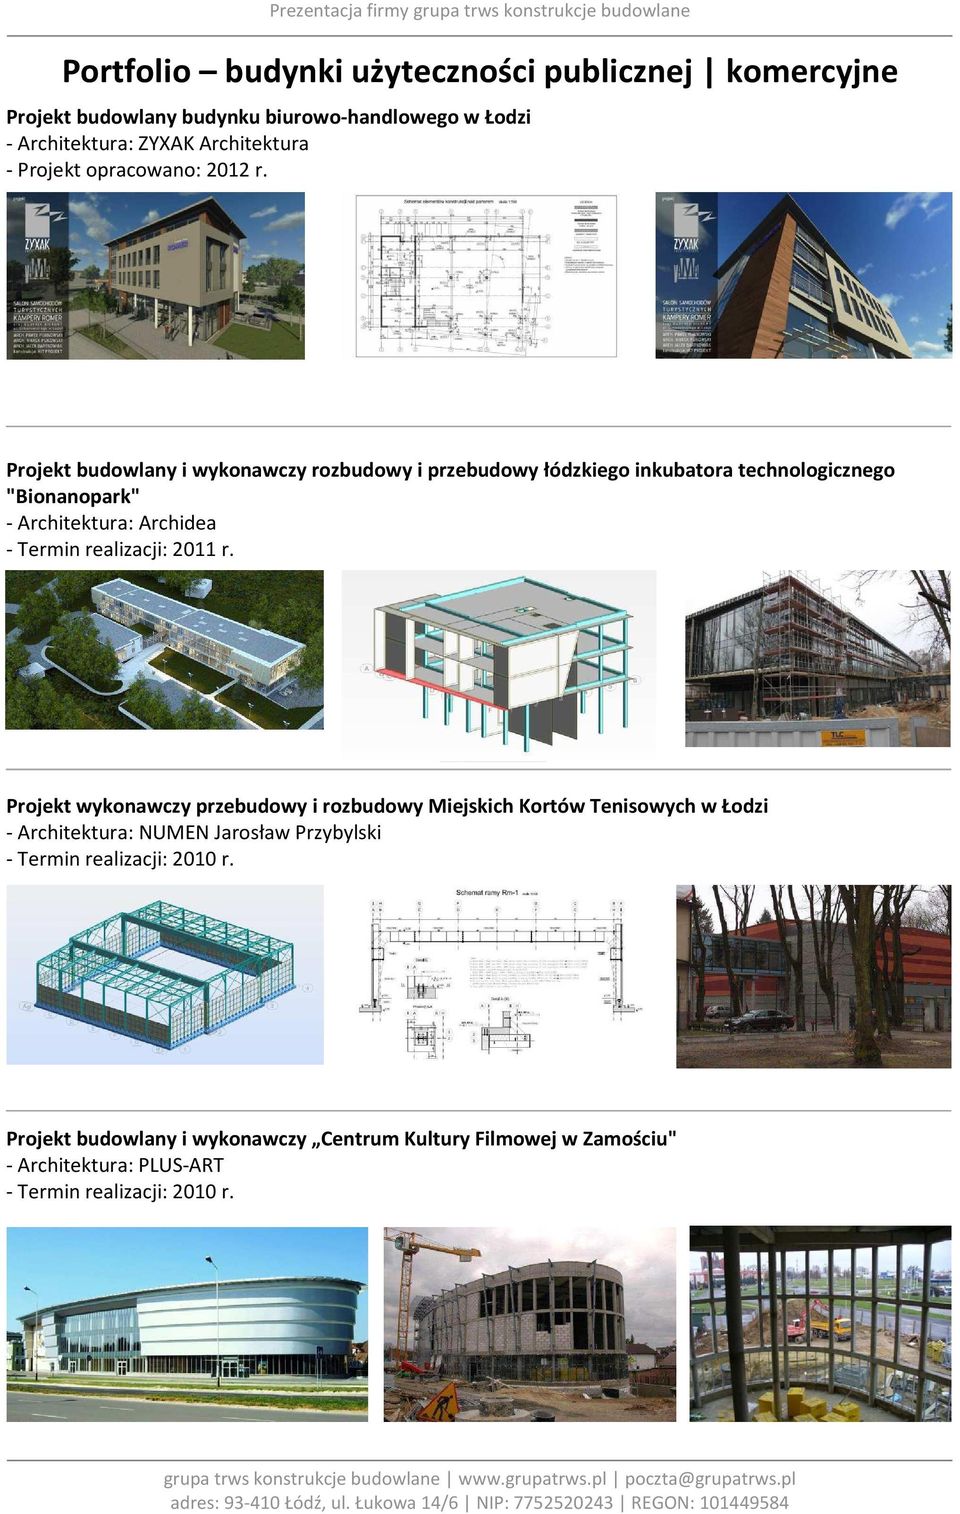 Projekt budowlany i wykonawczy rozbudowy i przebudowy łódzkiego inkubatora technologicznego "Bionanopark" - Architektura: Archidea - Termin